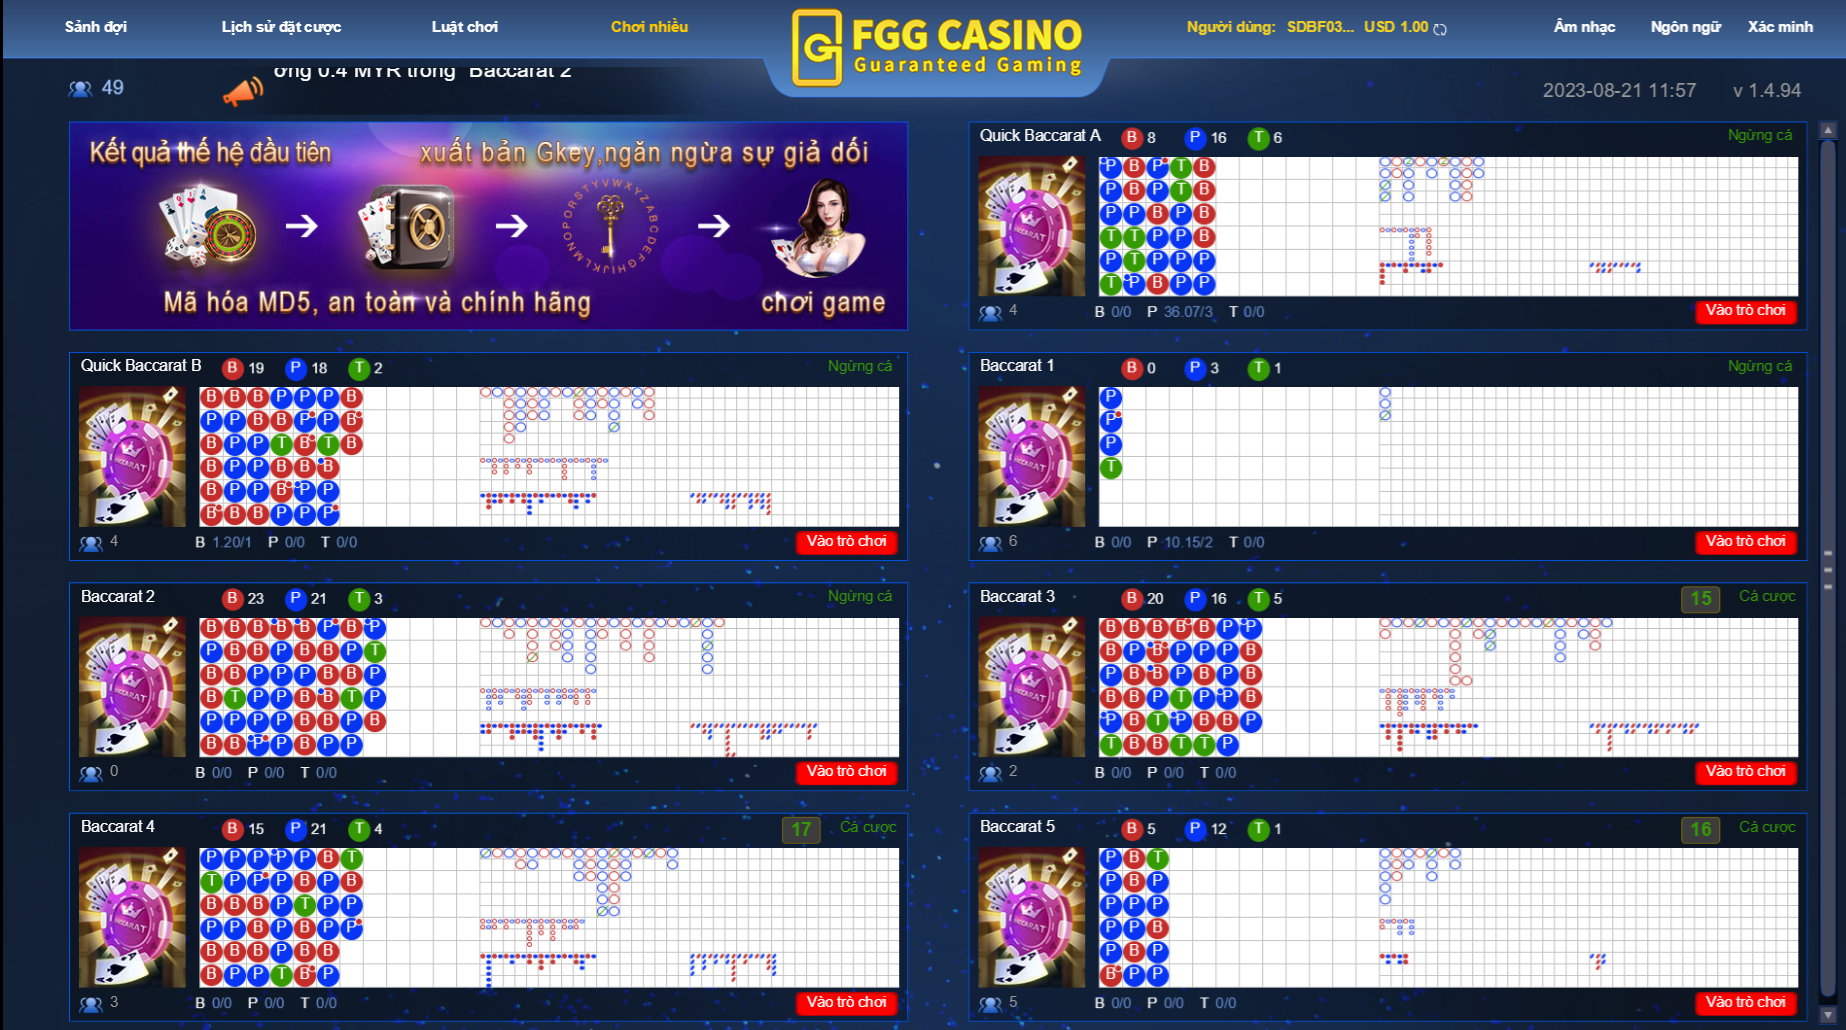 Hướng dẫn cá cược FGG Casino tại BONG88